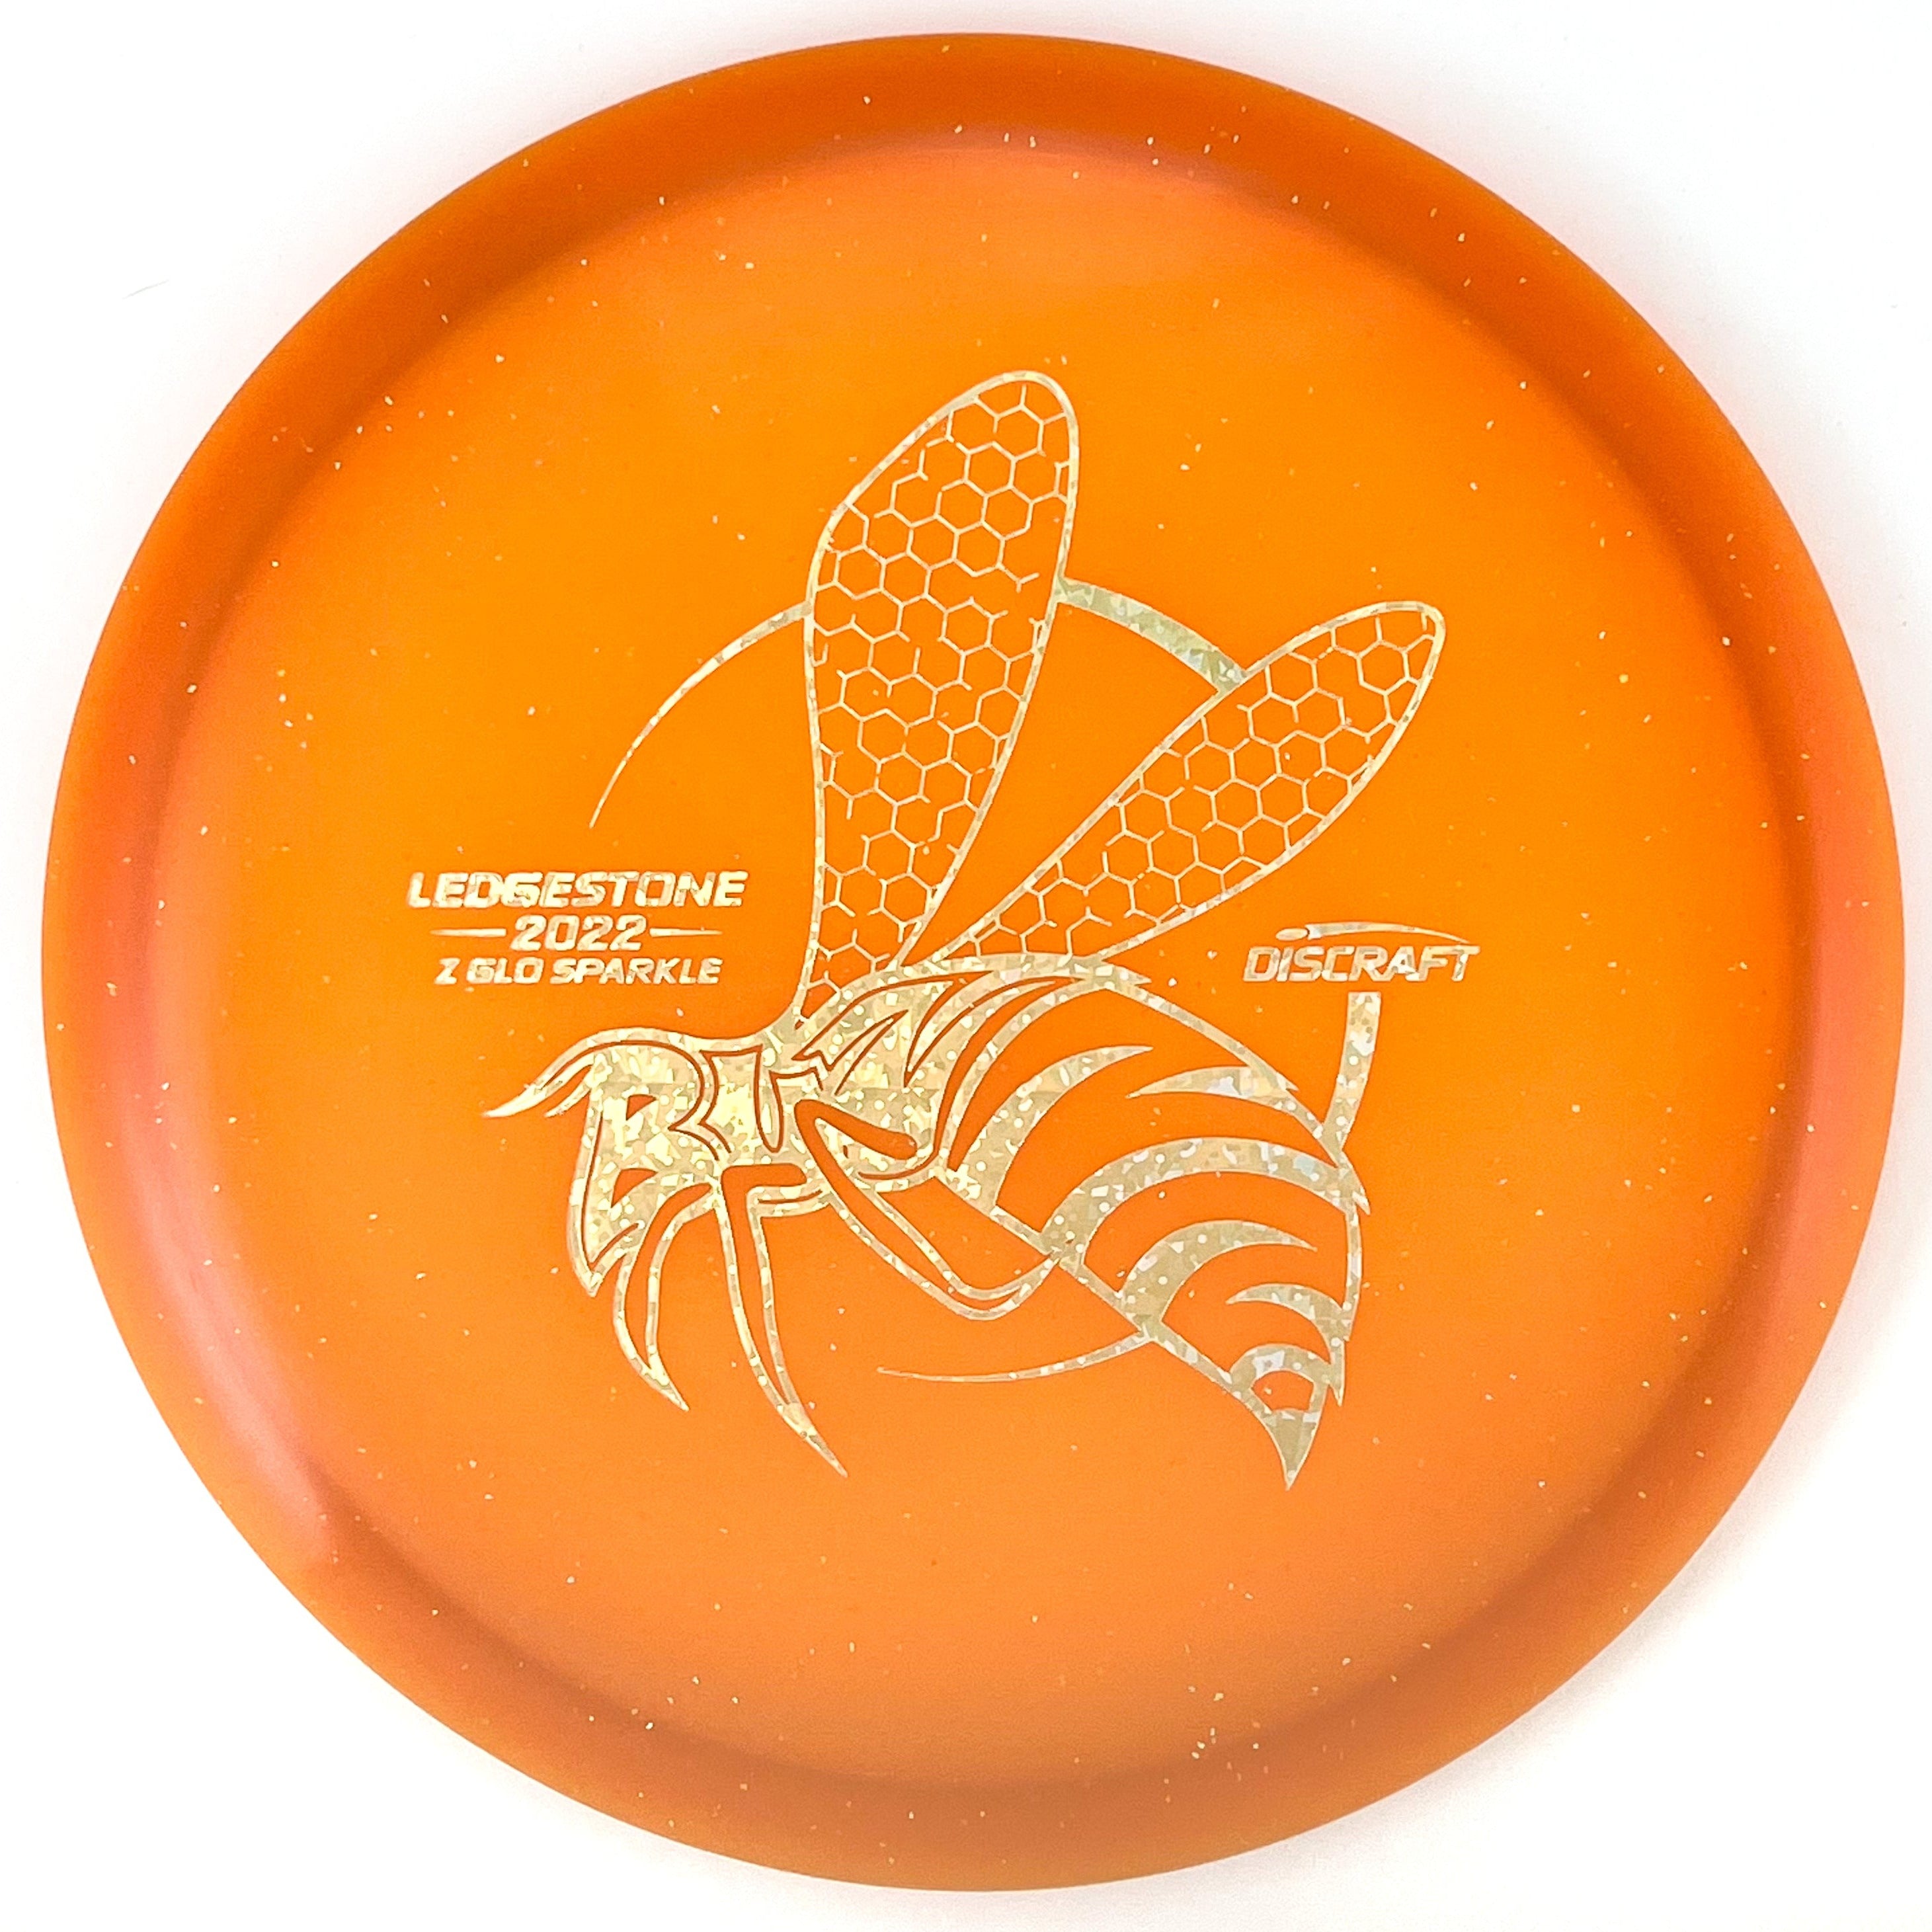 2022 Ledgestone Edition Z Glo Sparkle Buzzz midrange disc golf disc by Discraft.